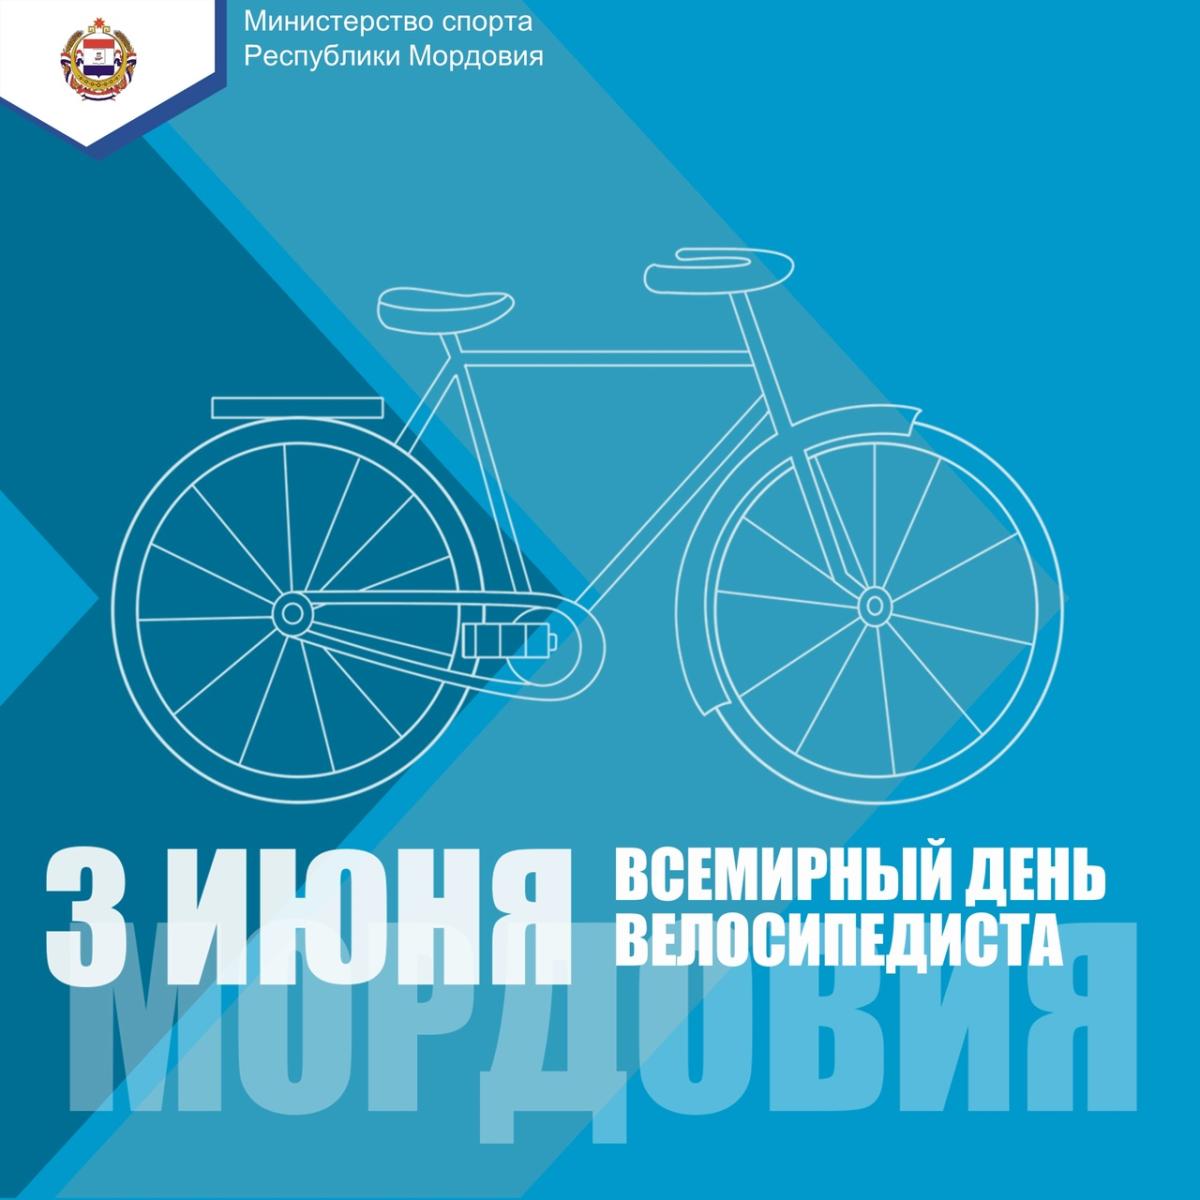 Всемирный день велосипедиста отметят в Мордовии